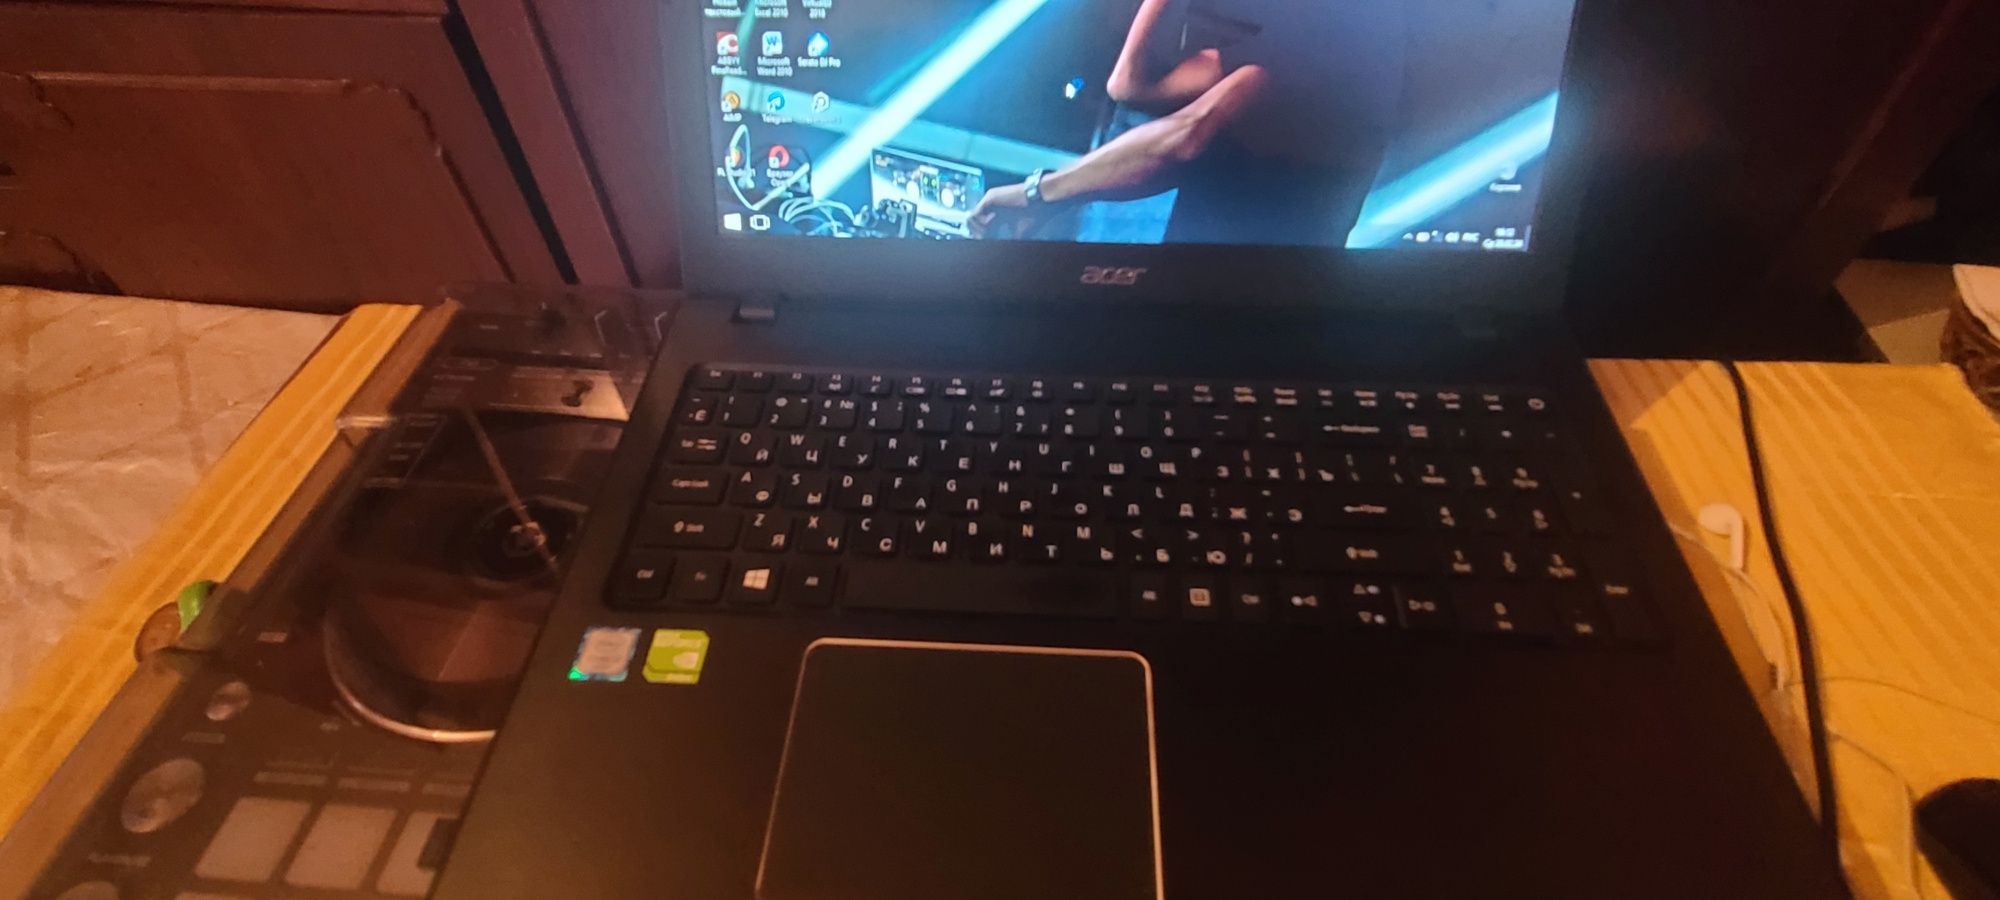 Acer e5-576 laptop